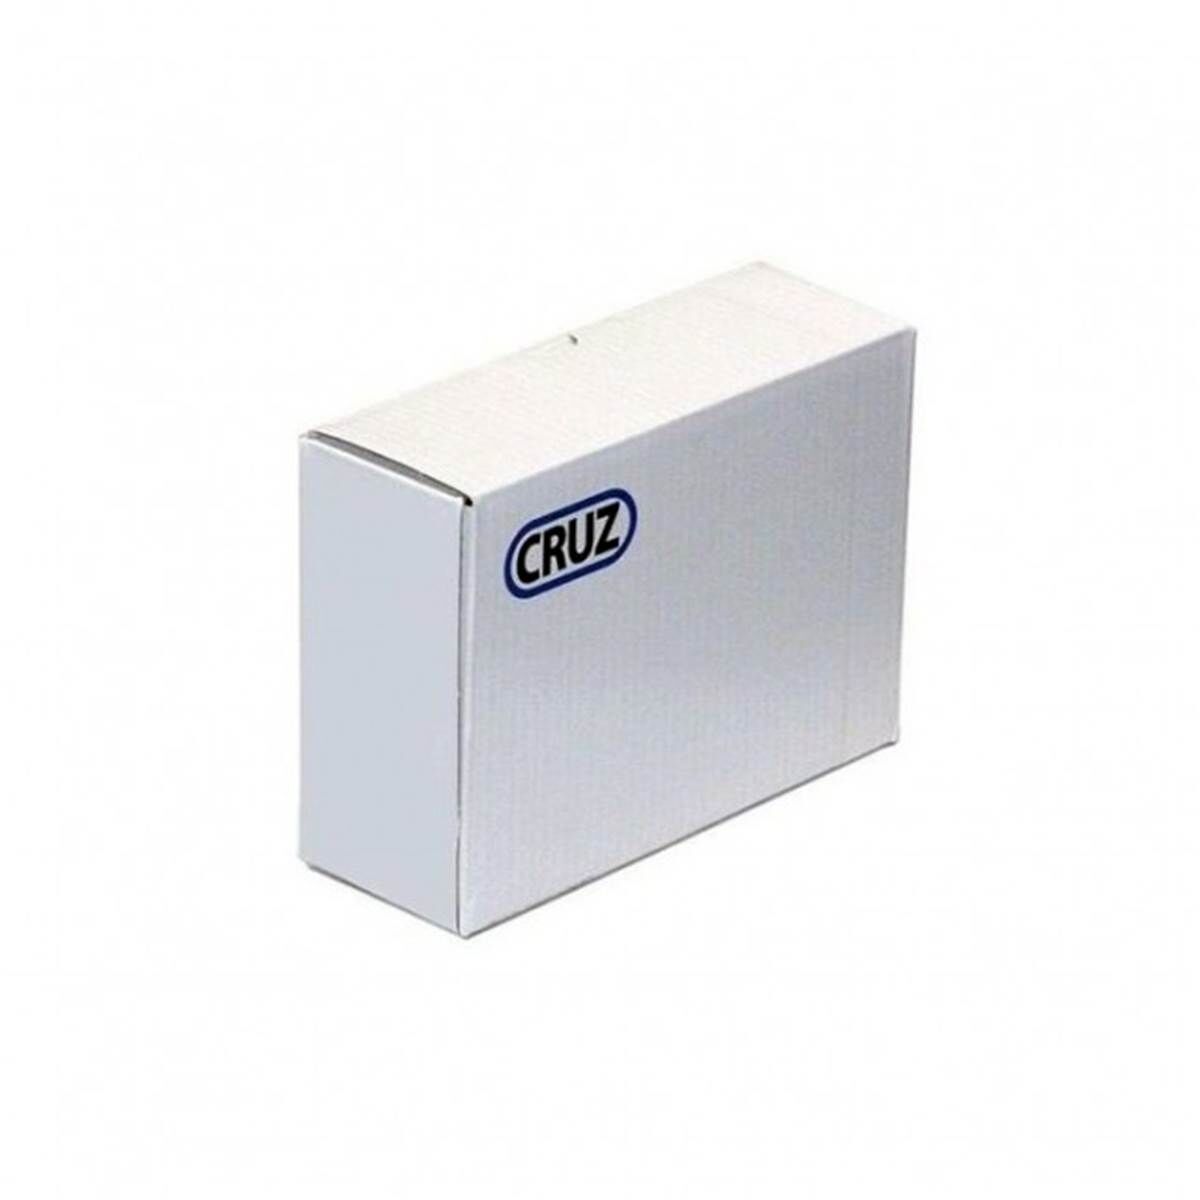 CRUZ Kit barras de techo  opti+ 935-779